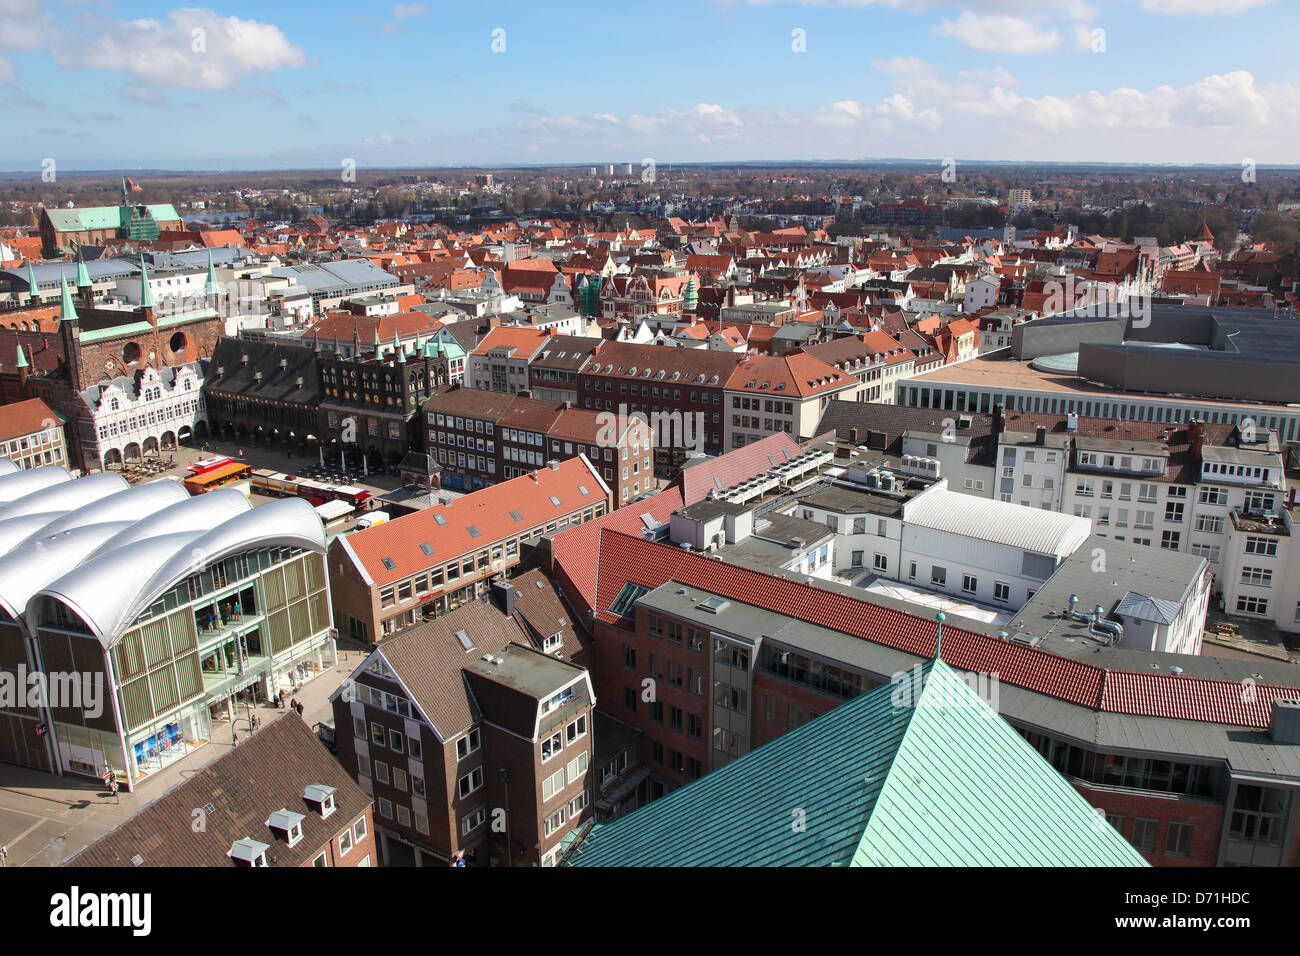 Vista aerea sul centro storico di Lubecca, Schleswig-Holstein, Germania il 8 aprile 2013. Foto Stock